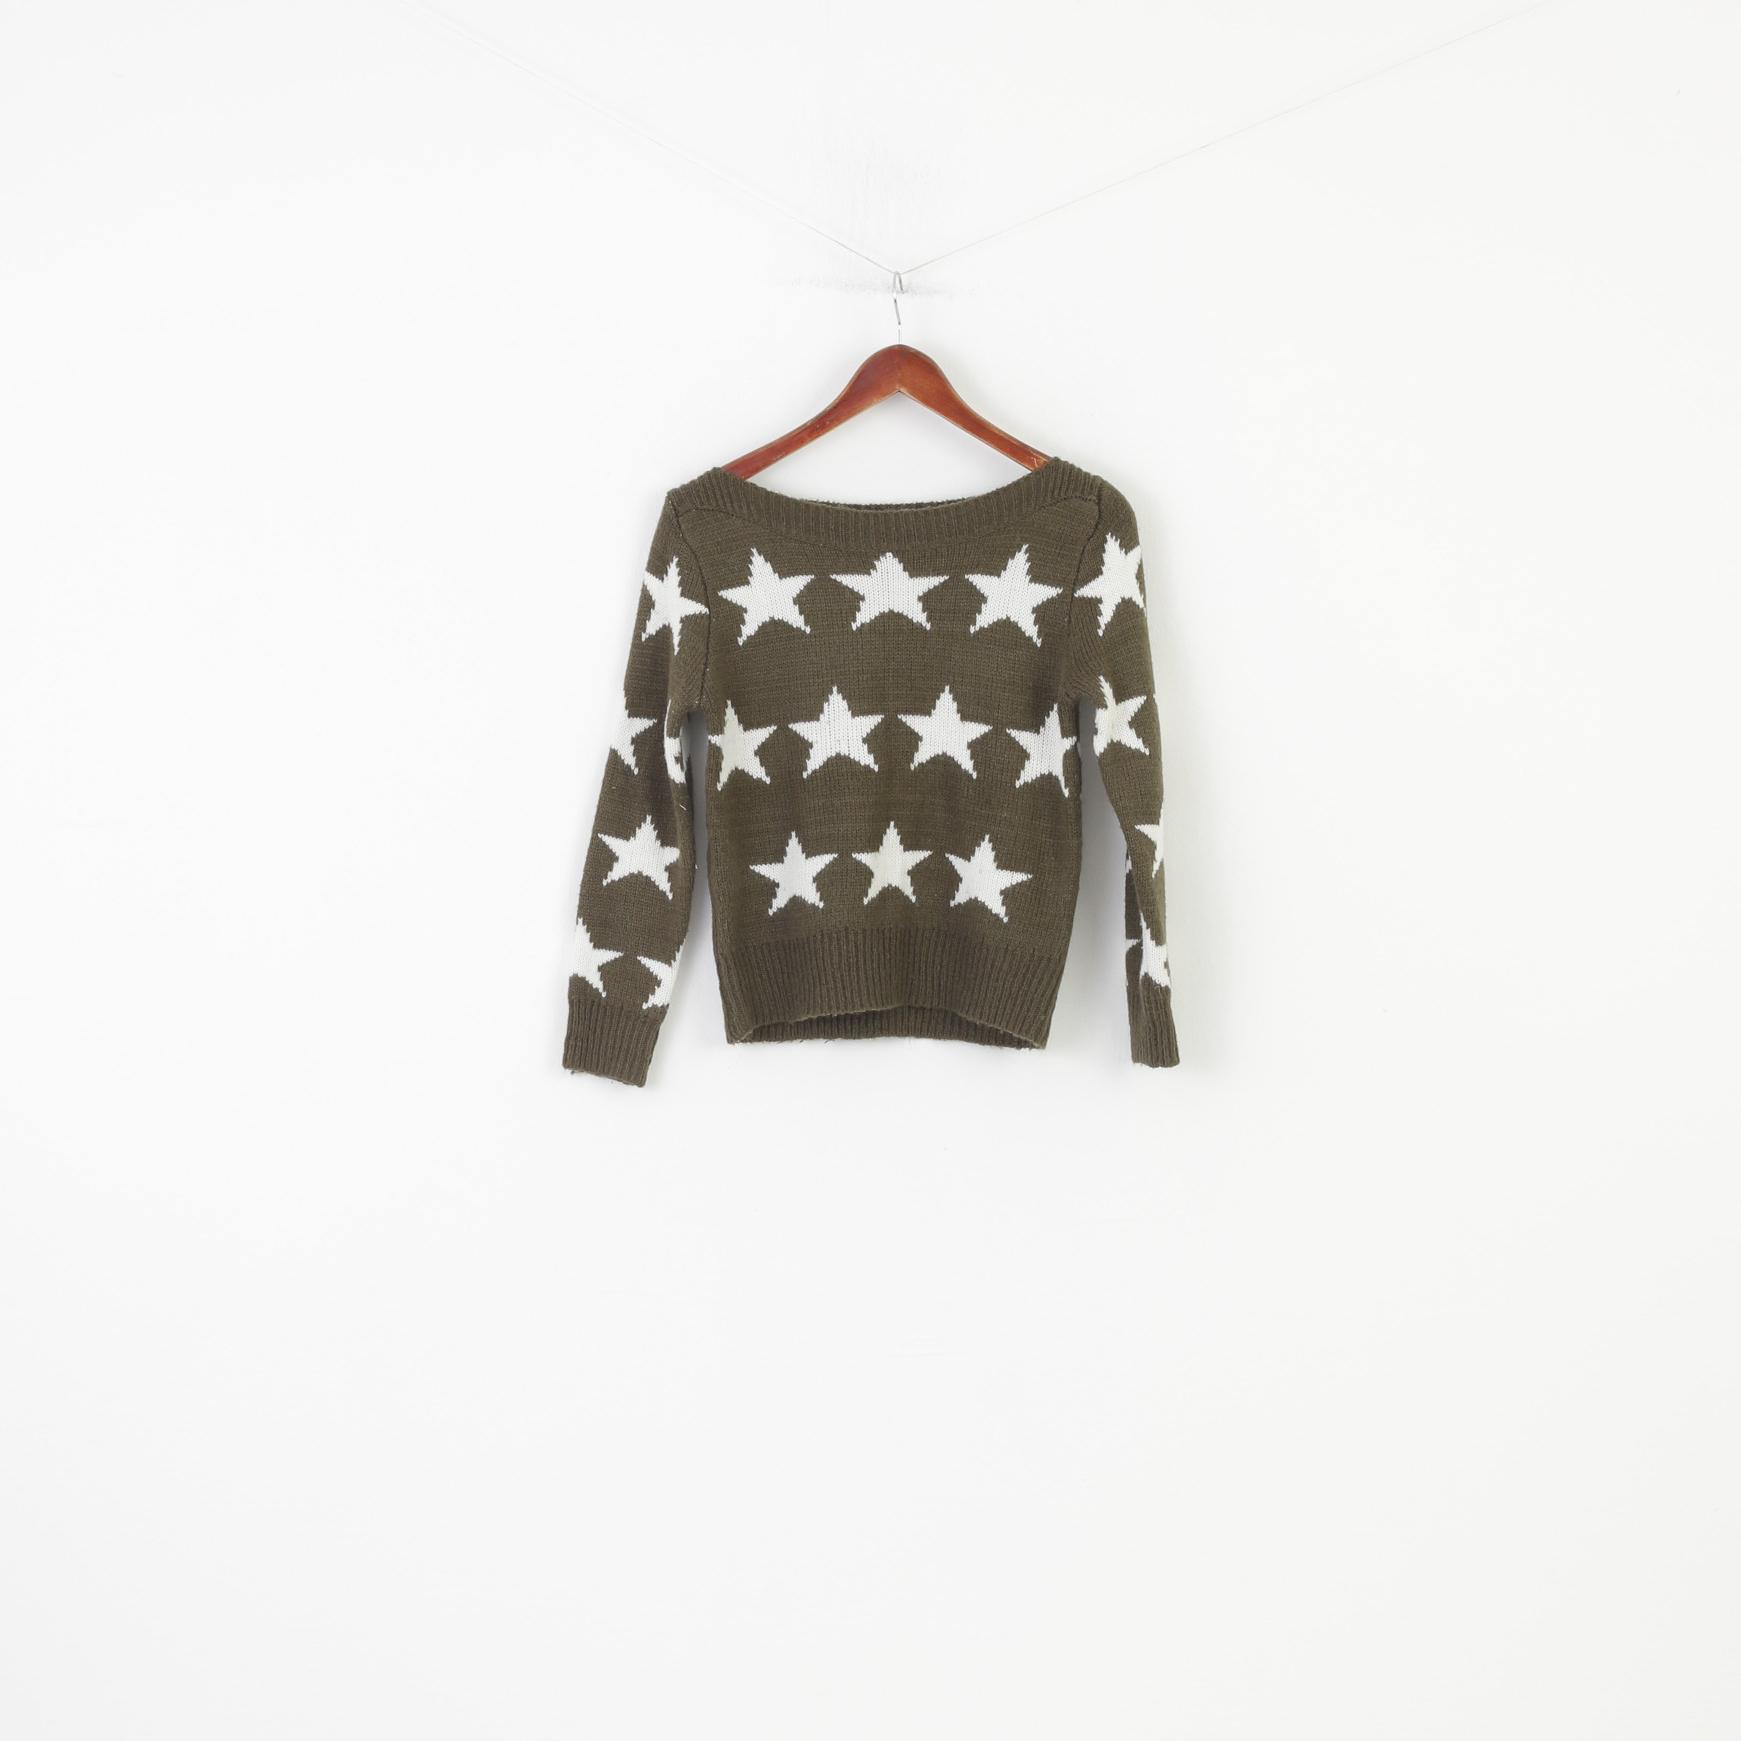 JÖWELL Woman S Jumper Khaki Stars Crew Neck Acrylic Sweater Knitwear Classic Top